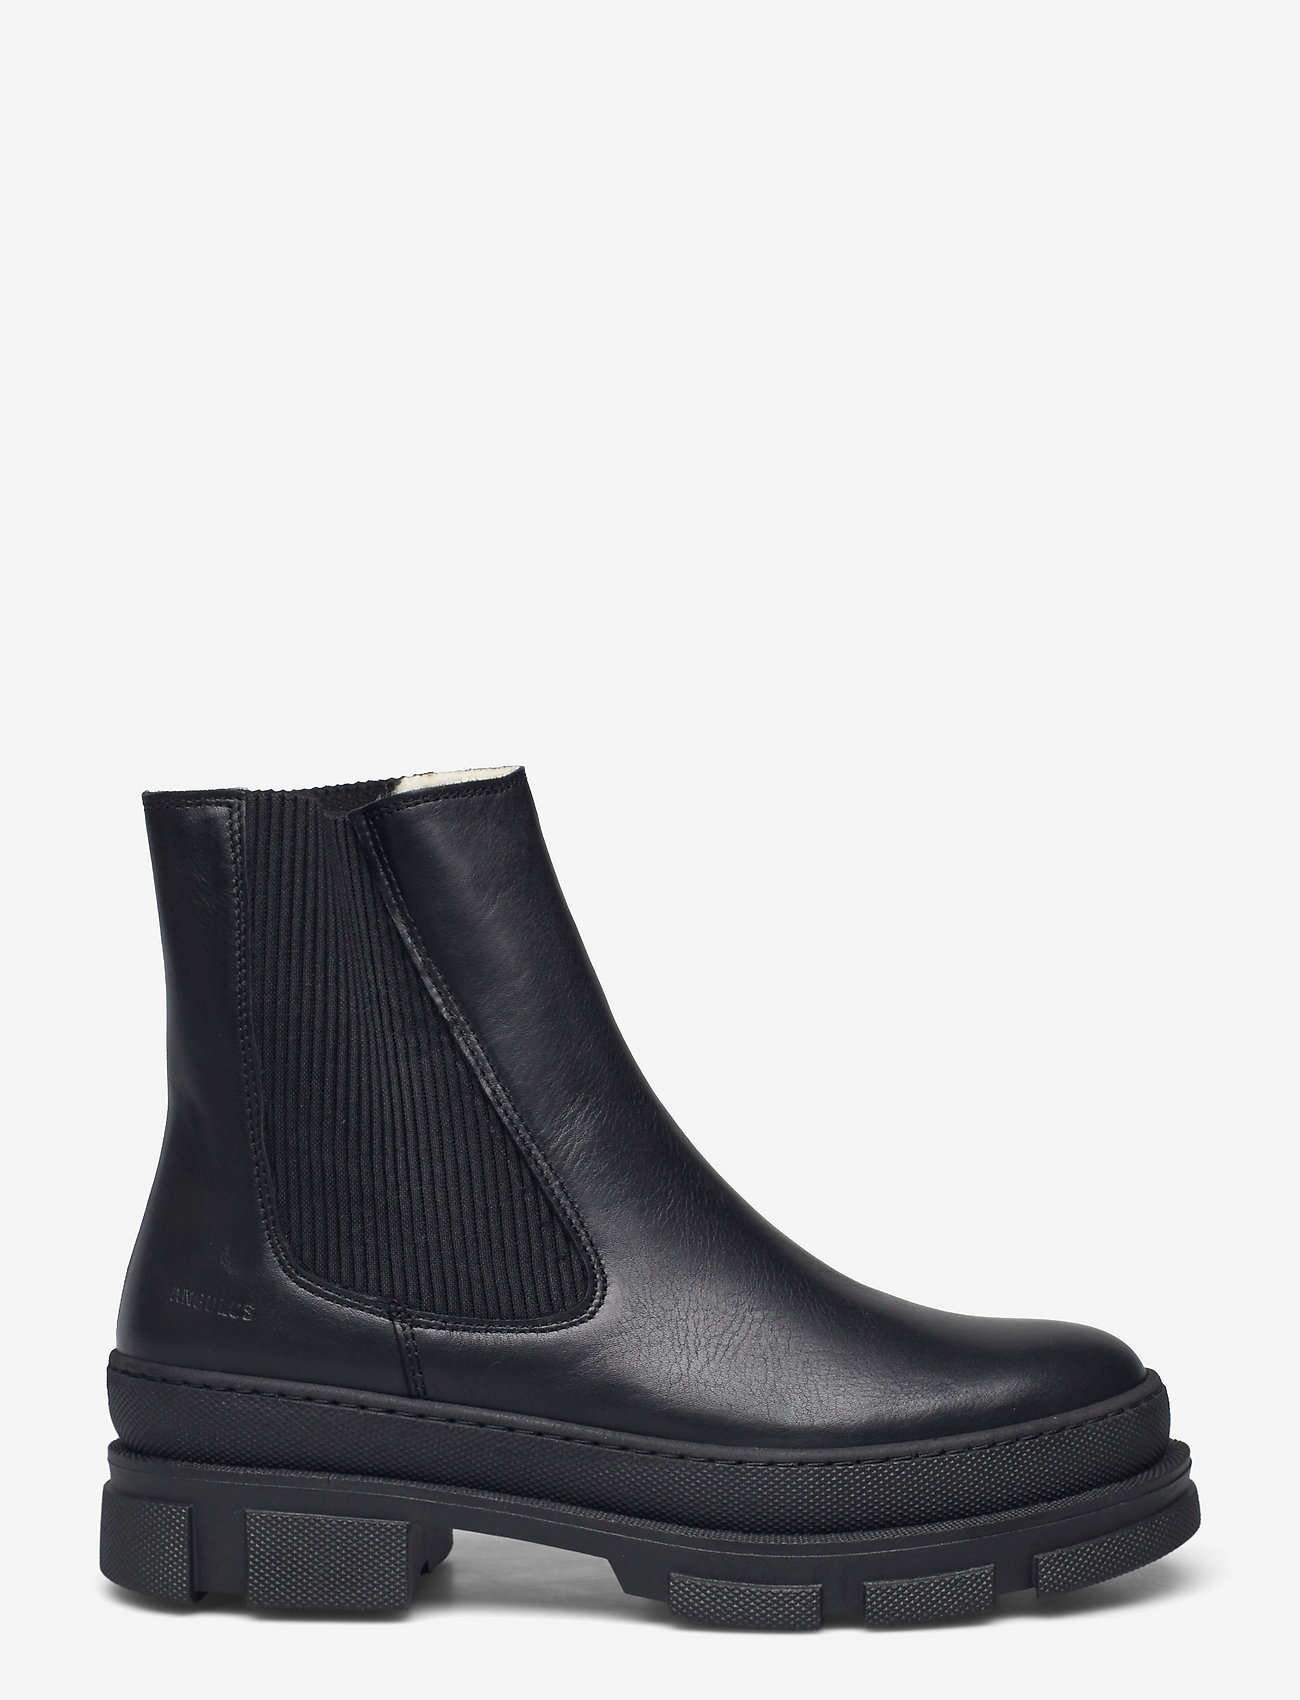 ANGULUS - Boots - flat - chelsea-saapad - 1604/019 black/black - 1